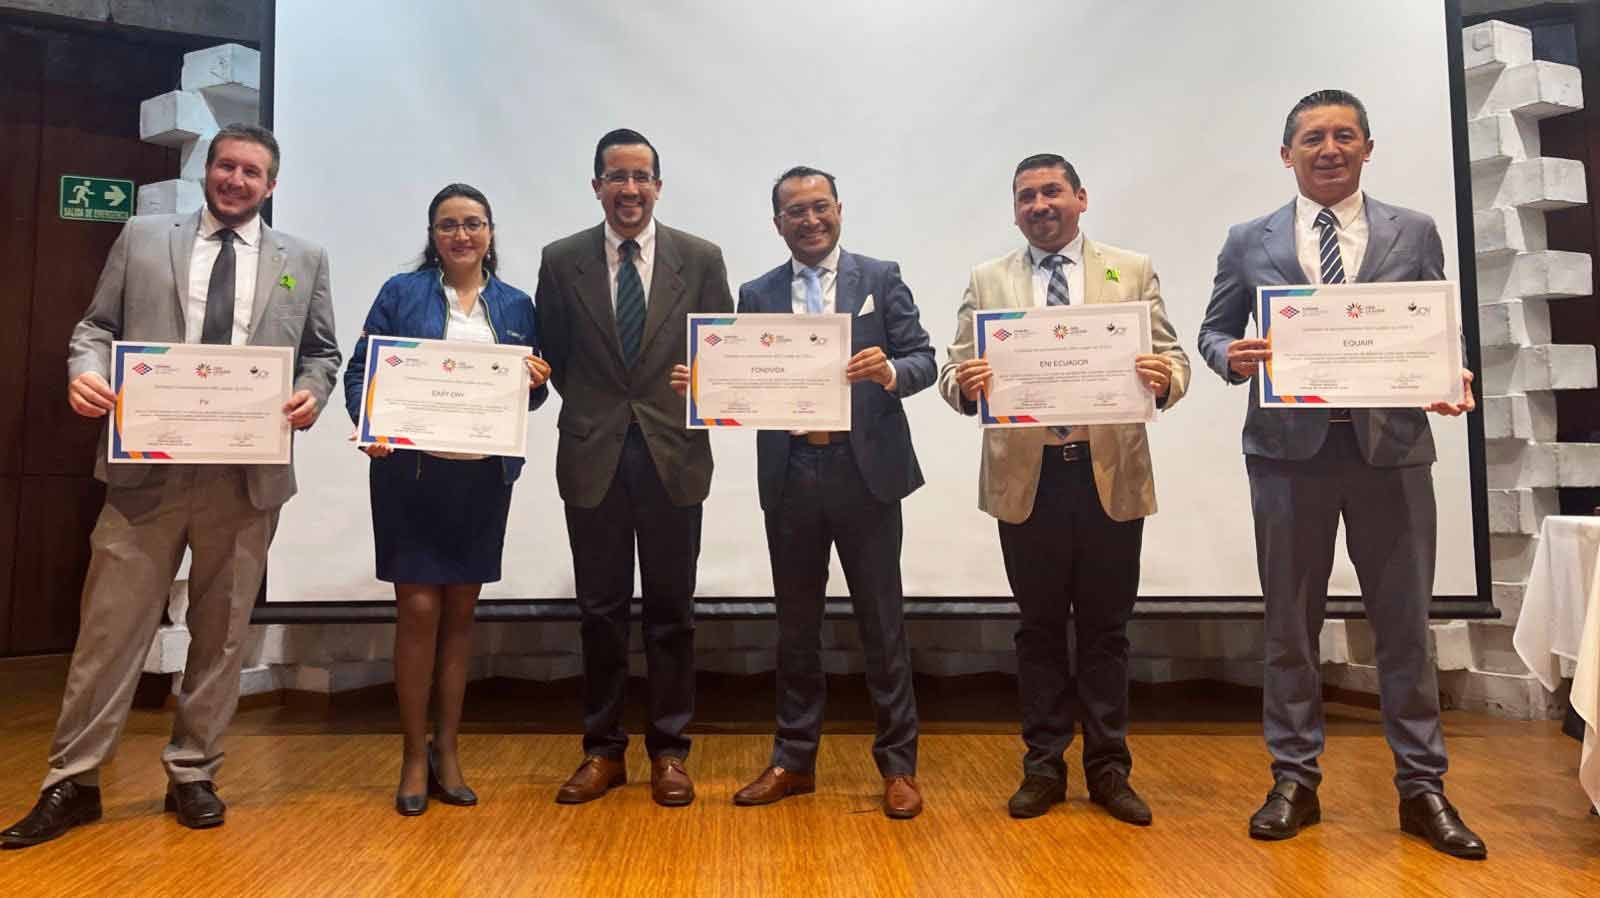 FV reconocida como ODS Leader, SalasFV - Cerámica, Grifería, Sanitarios, Inodoros, Baños